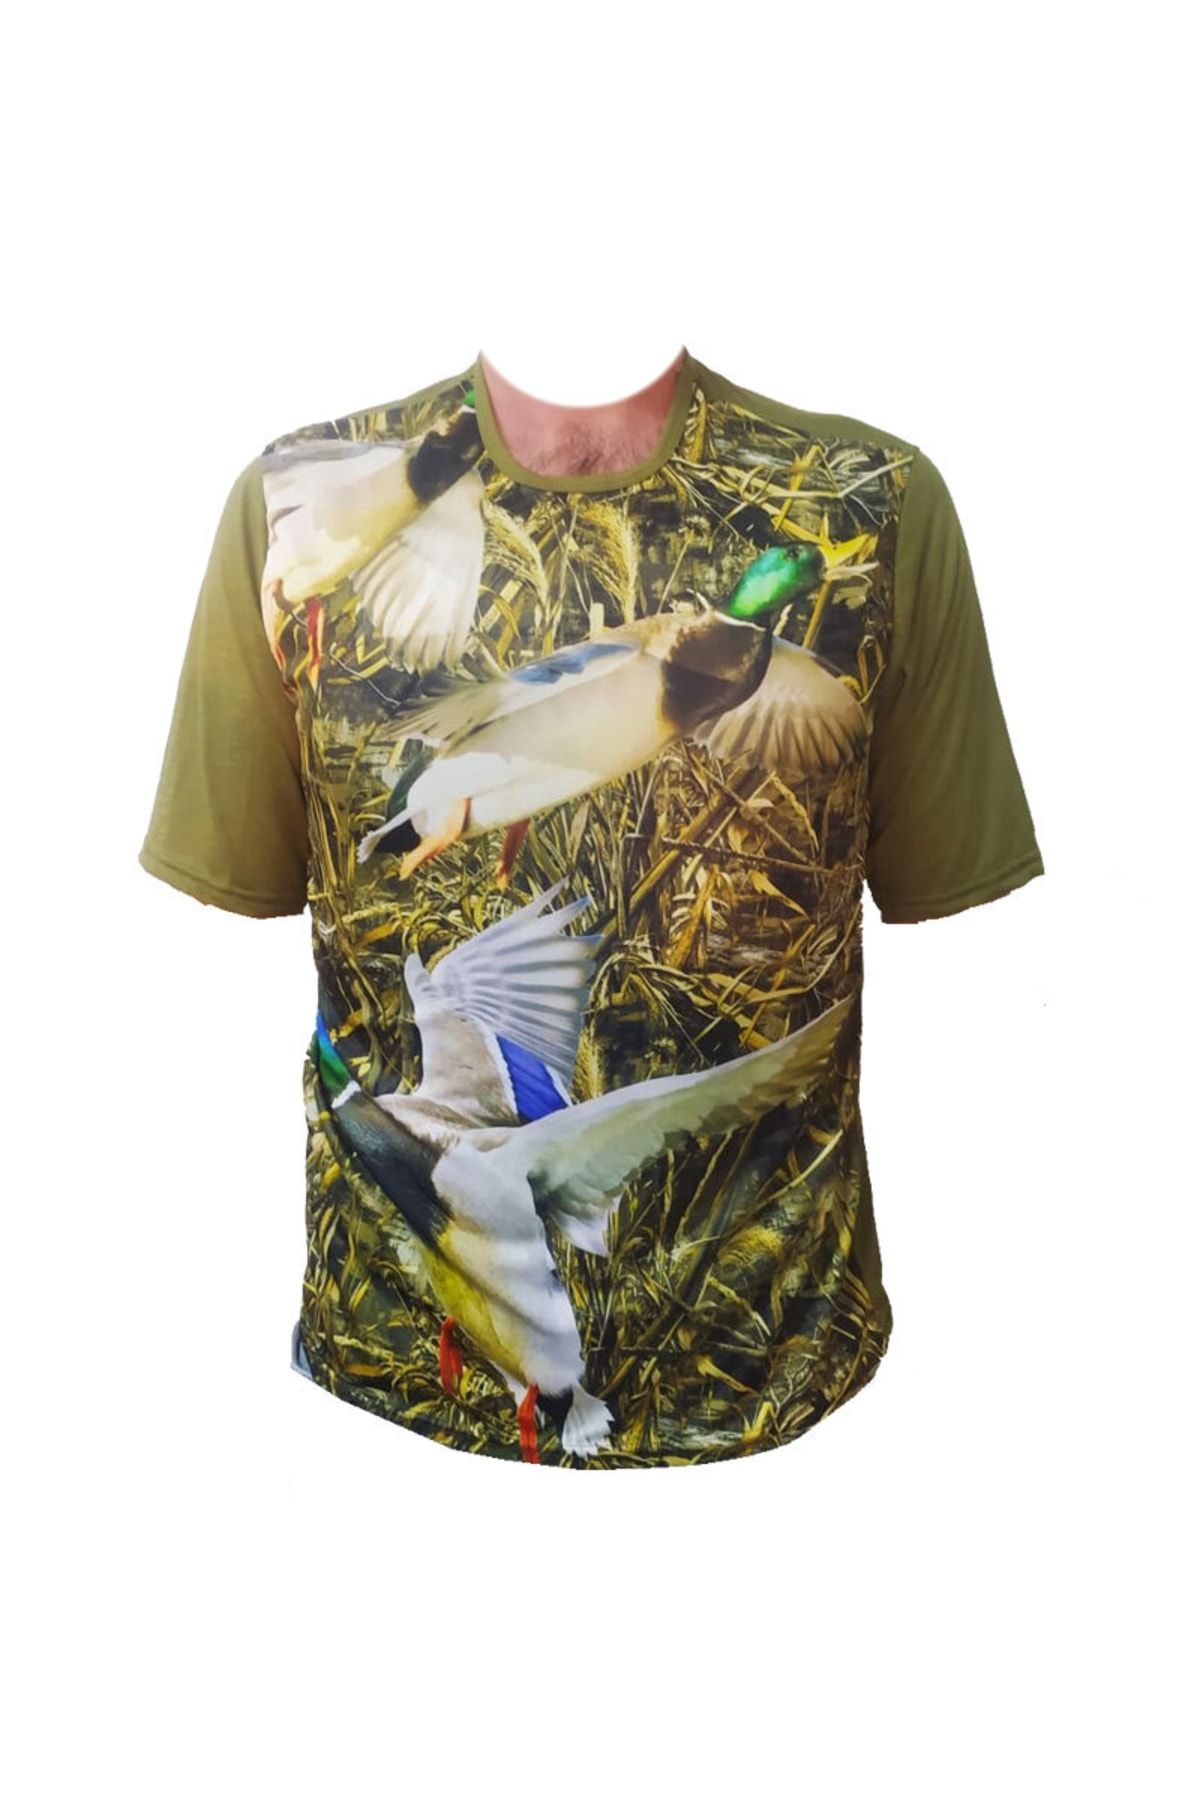 ALDOS Kısa Kol Sazlık Desenli Ördekli Avcı Ve Outdoor T-shirt